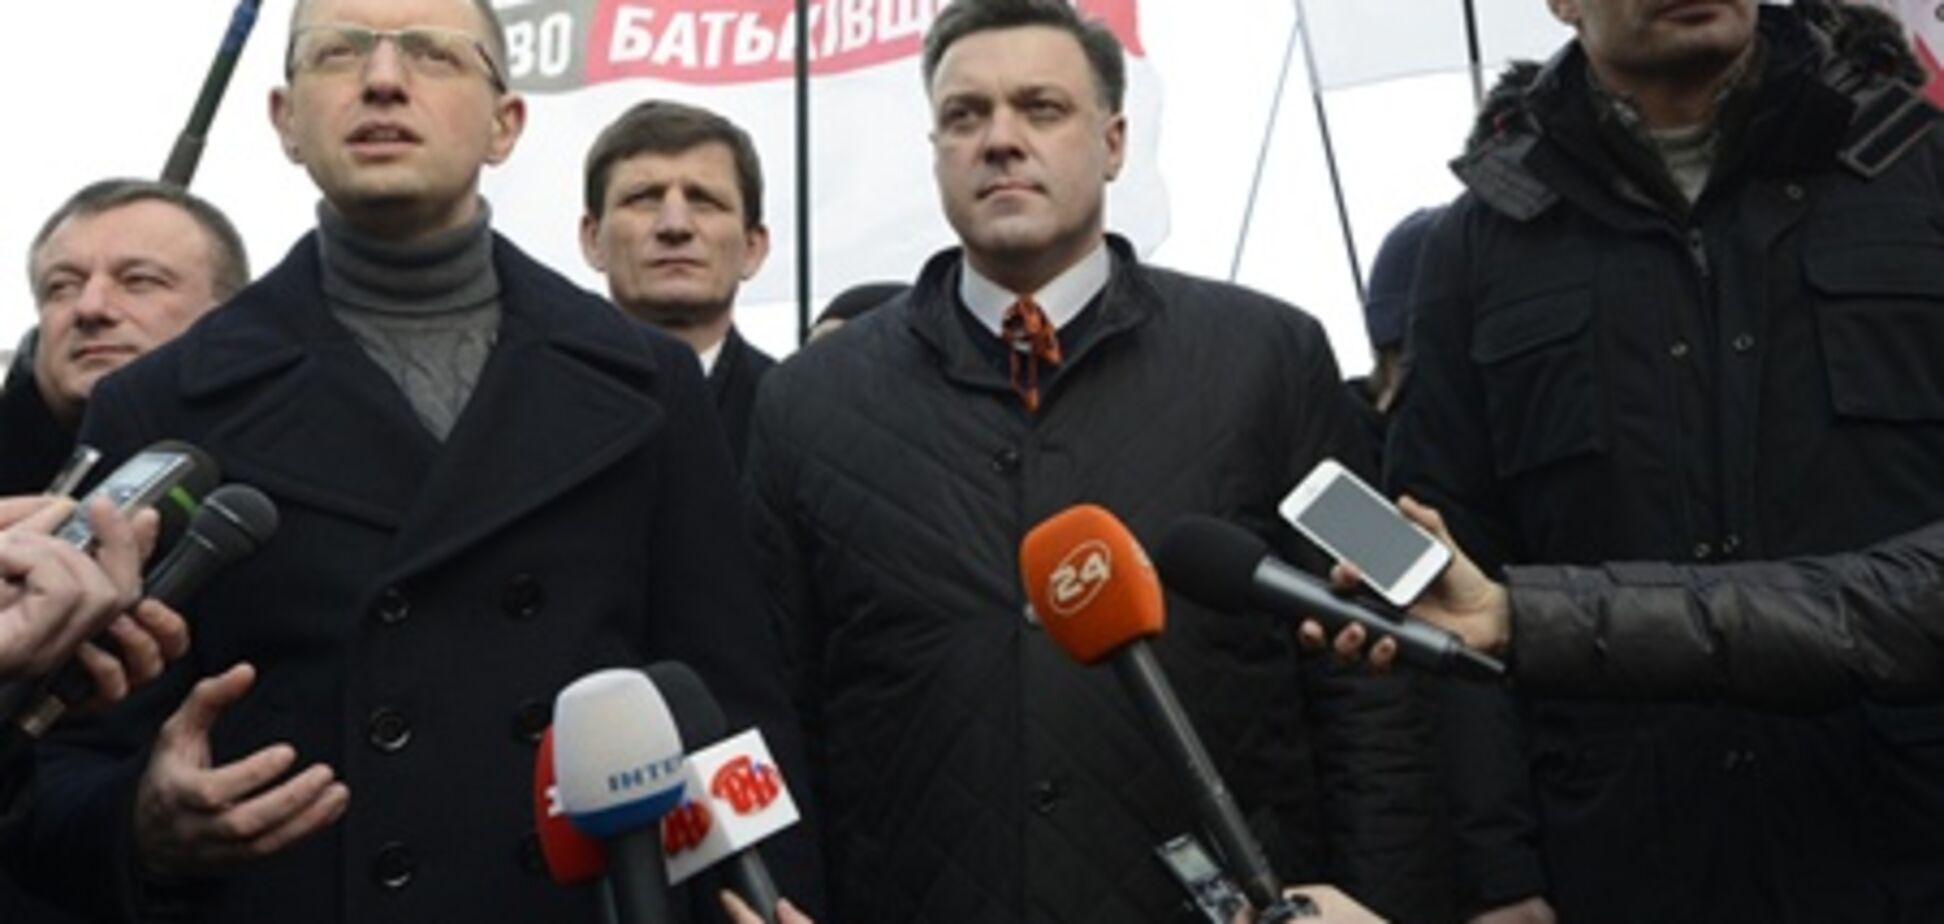 Яценюк, Кличко и Тягнибок вызваны в суд за блокирование Рады